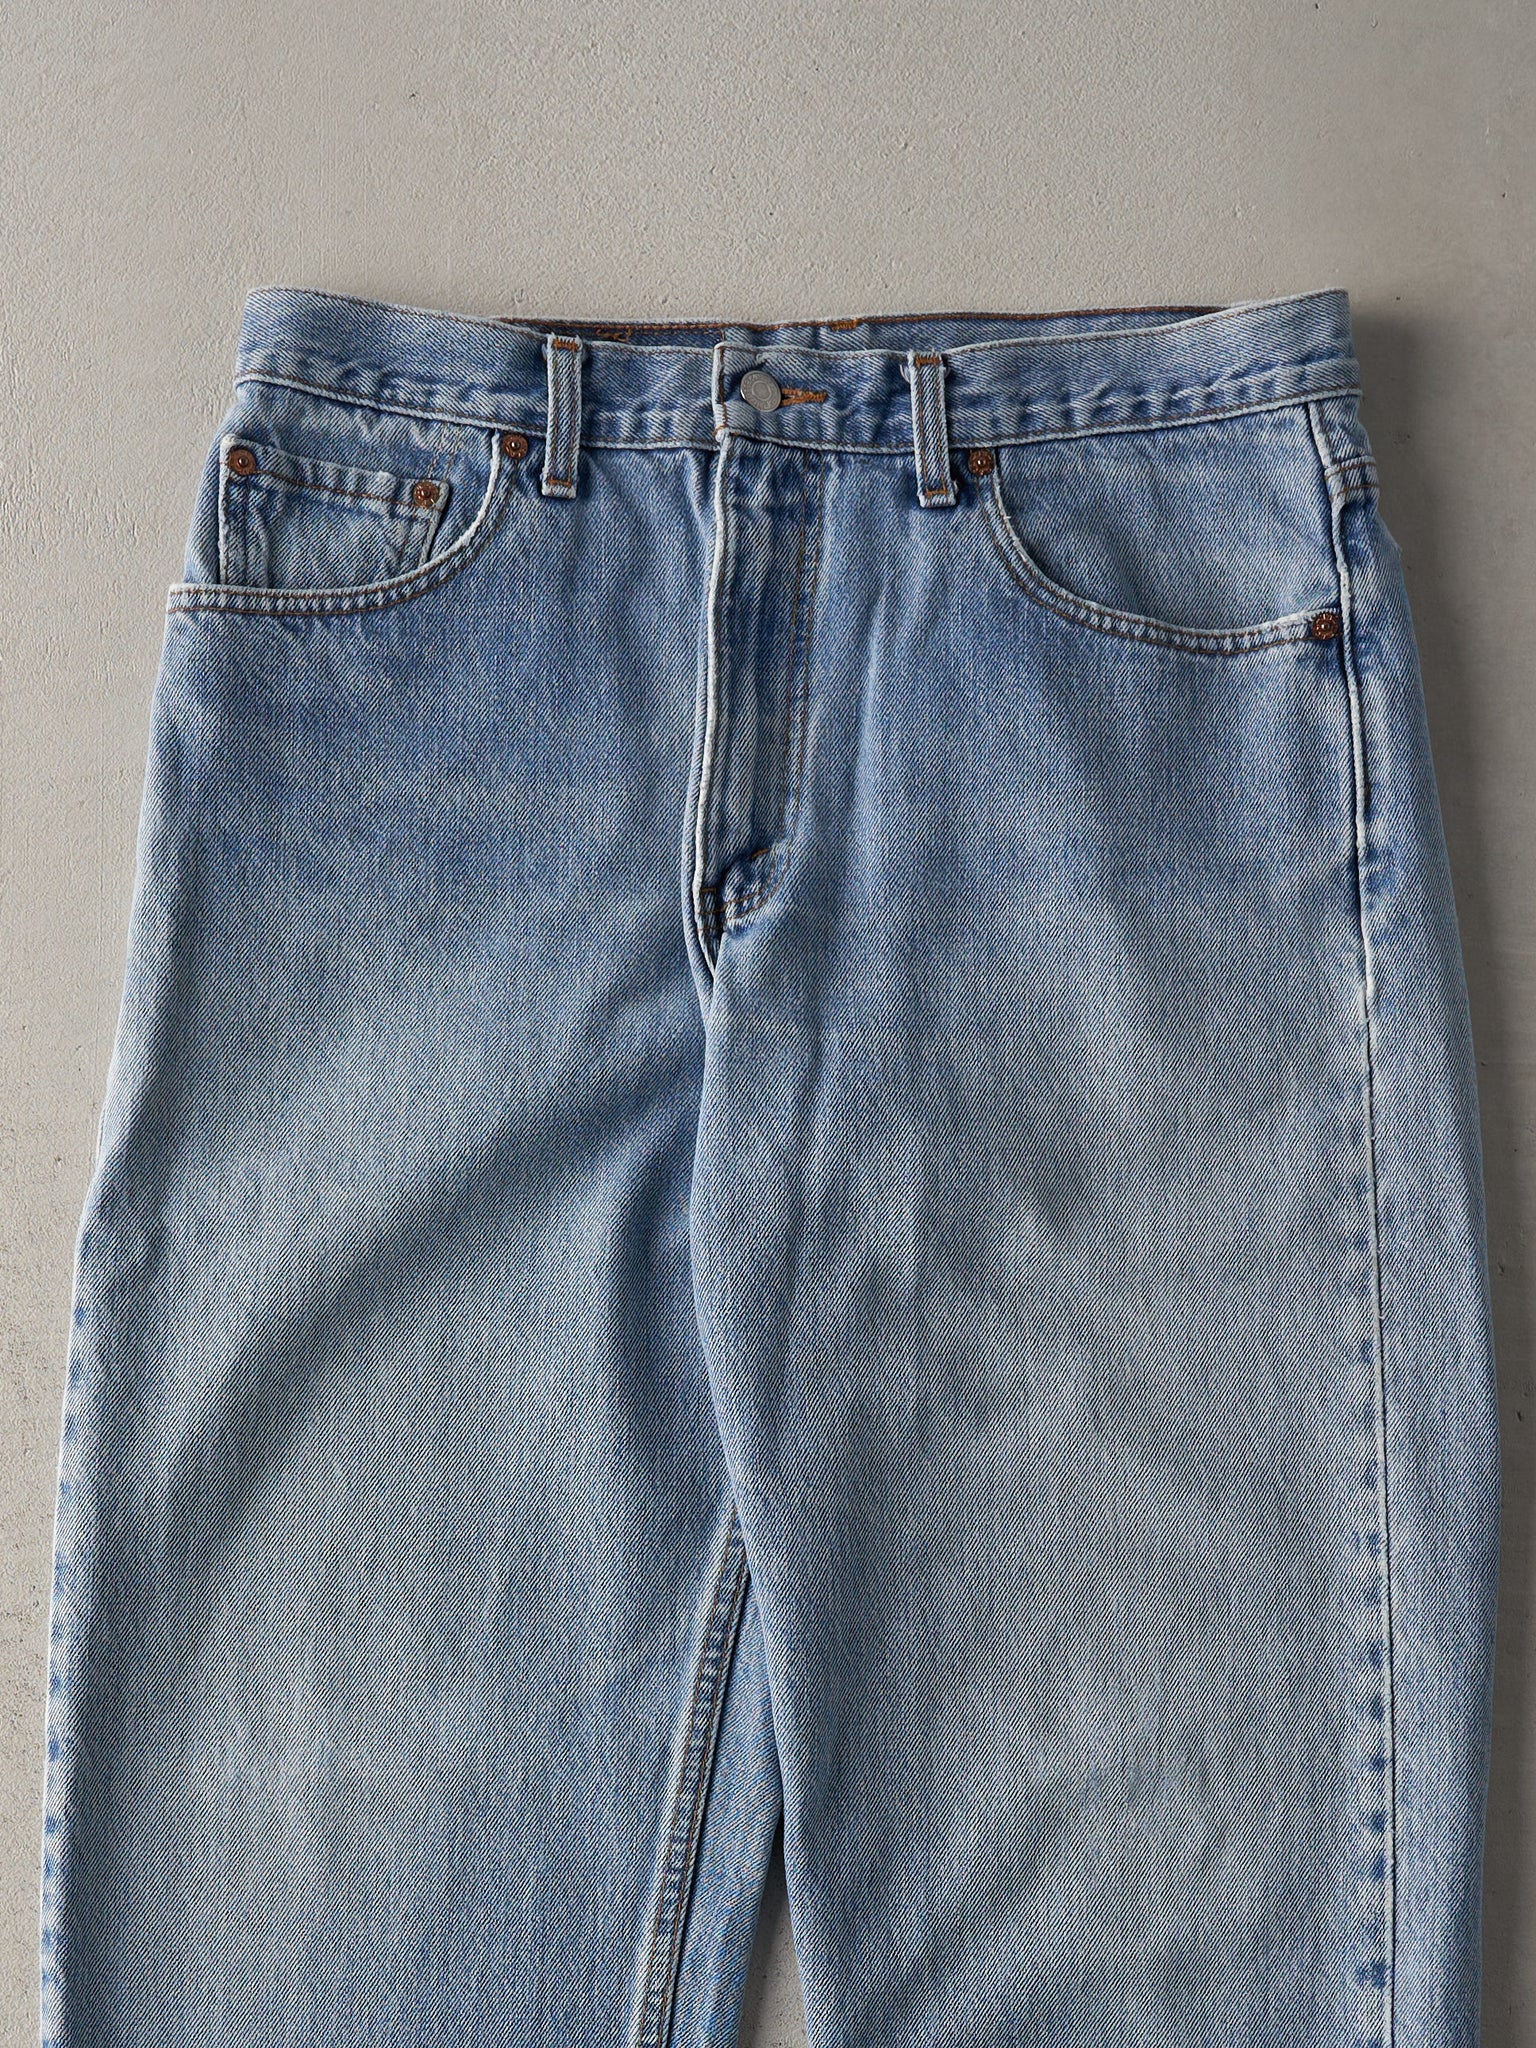 Vintage 90s Light Wash Levi's 550 Jeans (33x30.5)